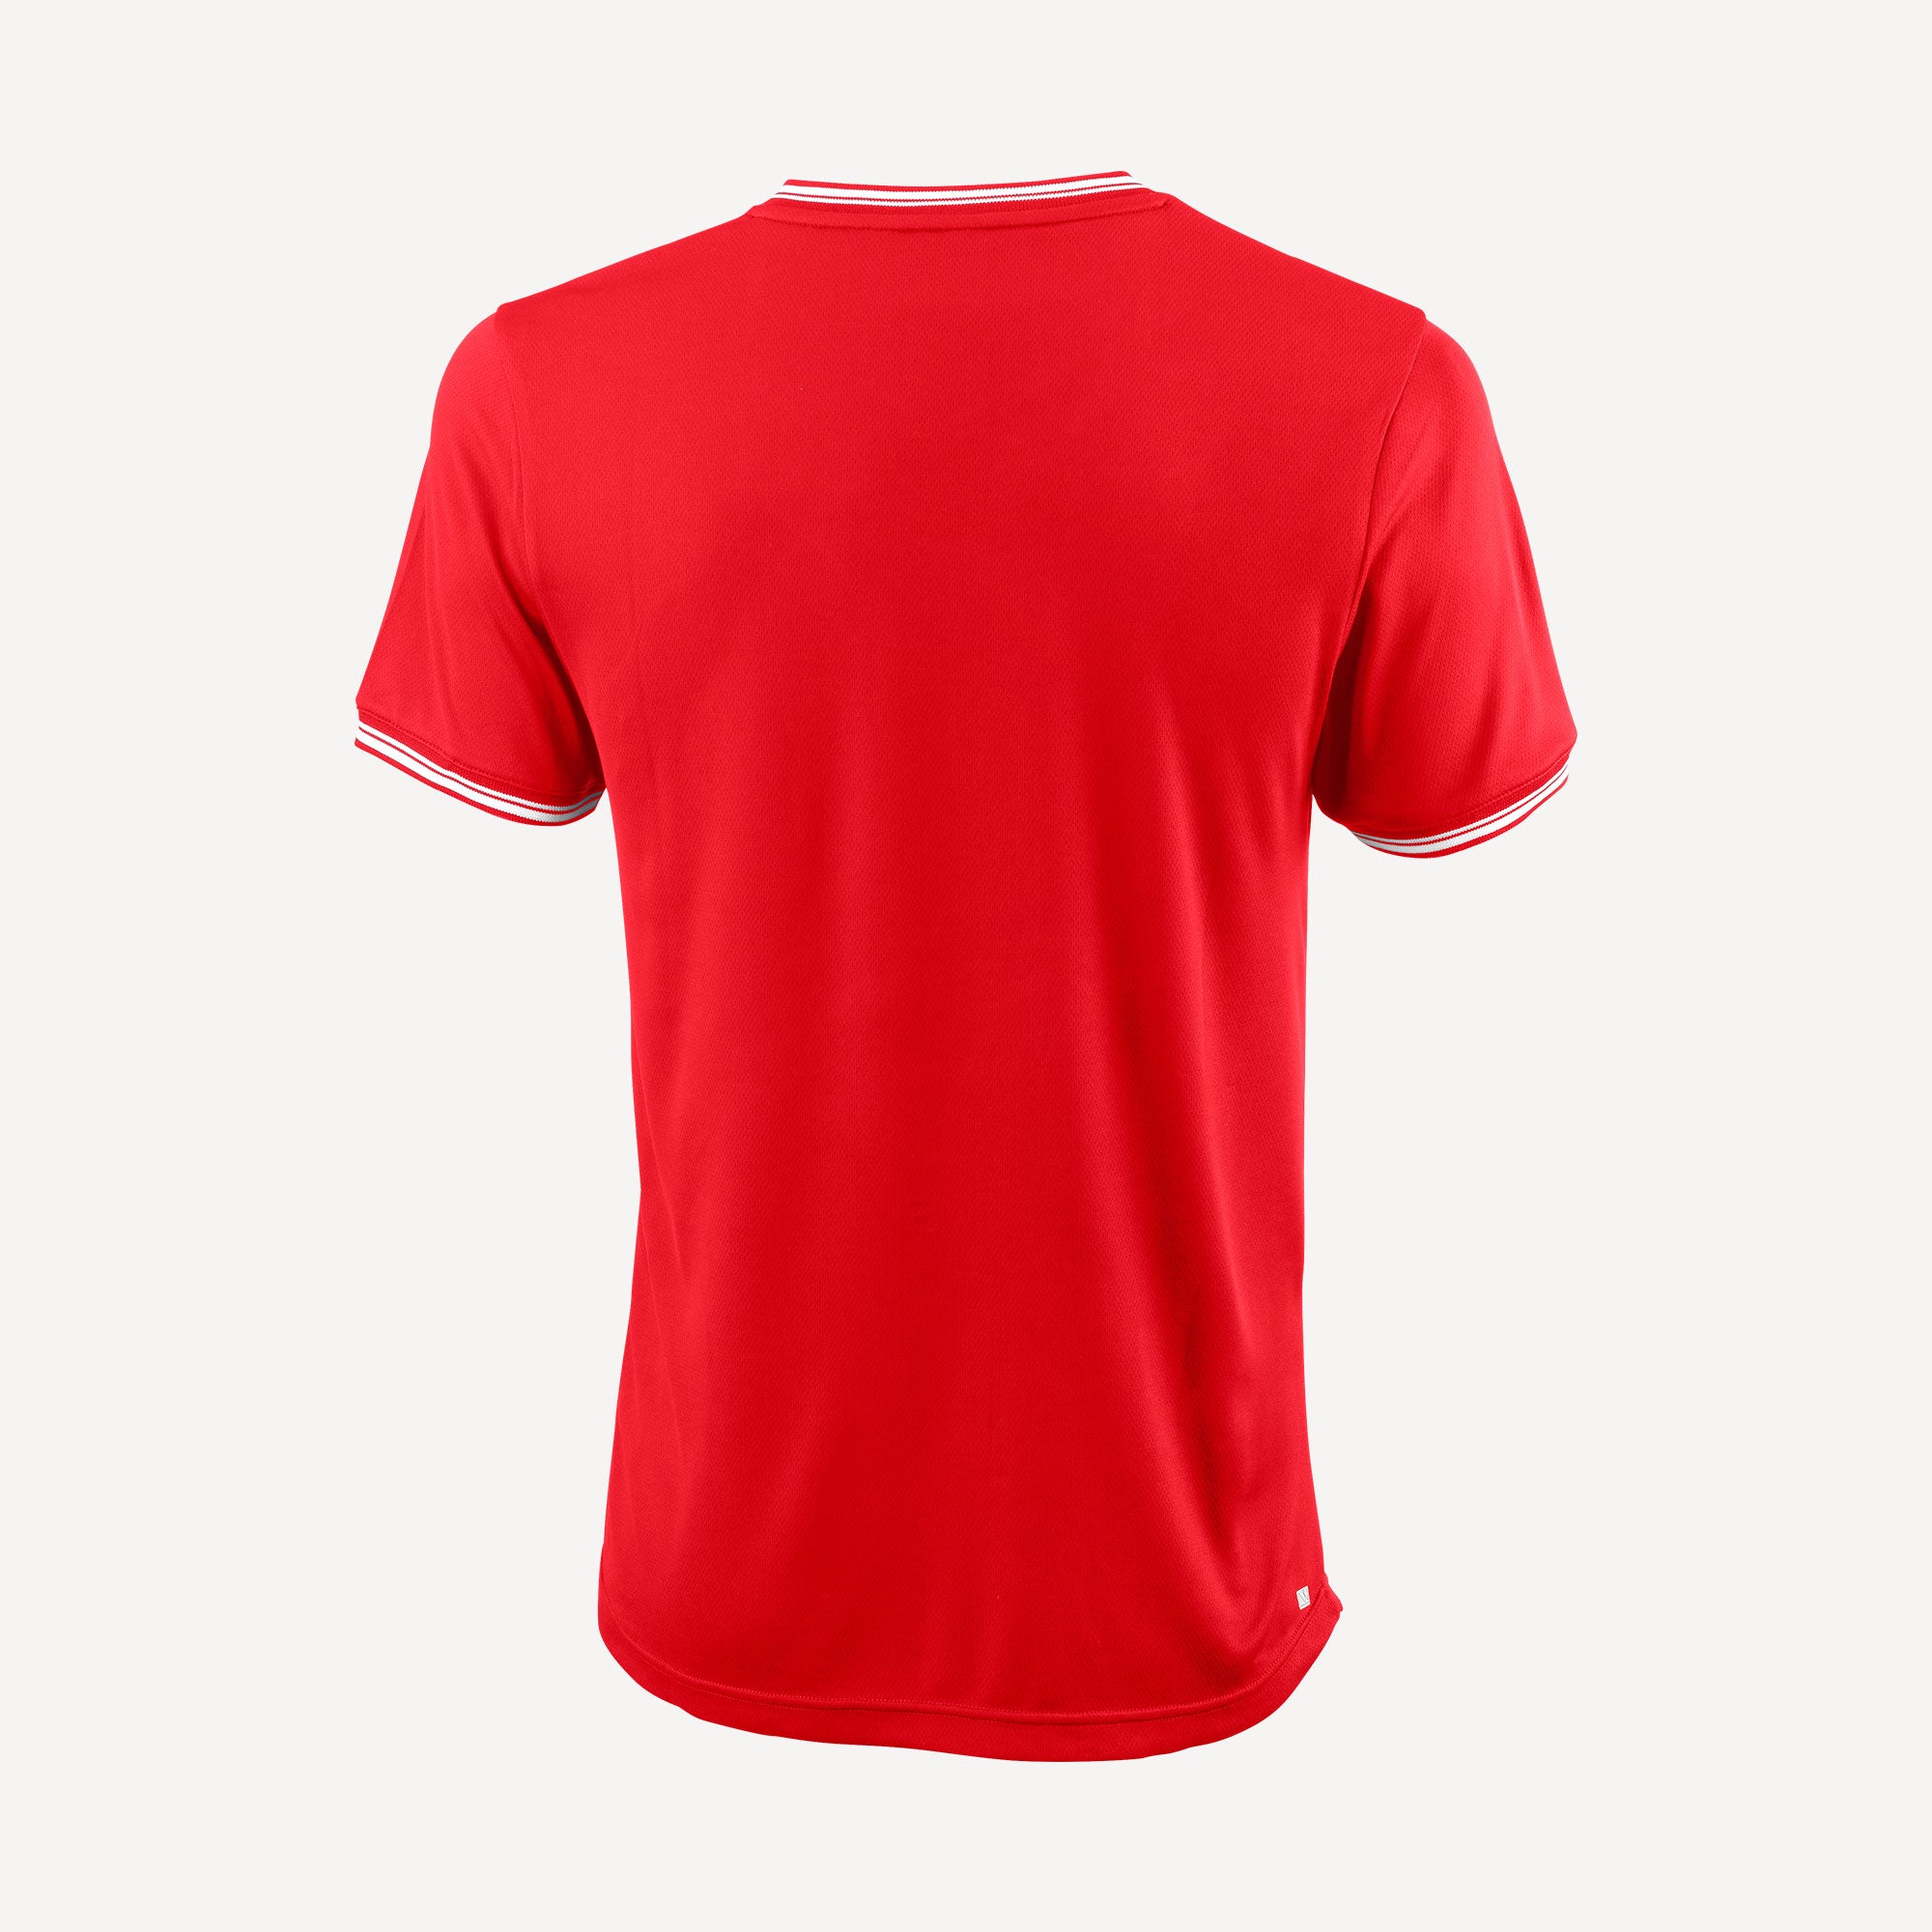 Wilson Team 2 Men's V-Neck Tennis Shirt Red (2)